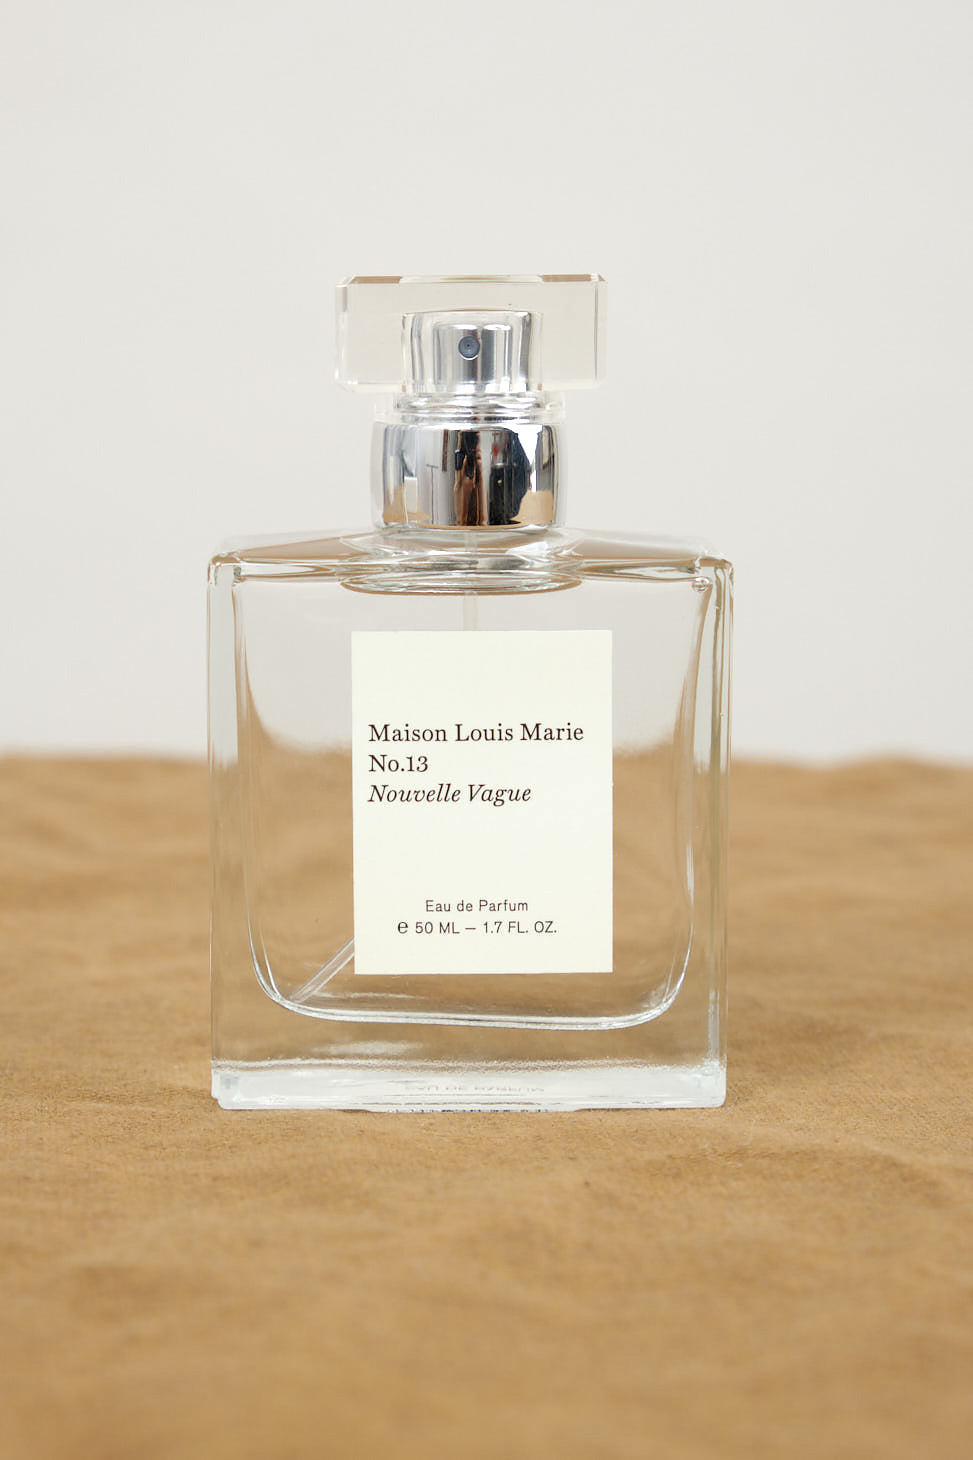 Maison Louis Marie - No.13 Nouvelle Vague - Eau de Parfum